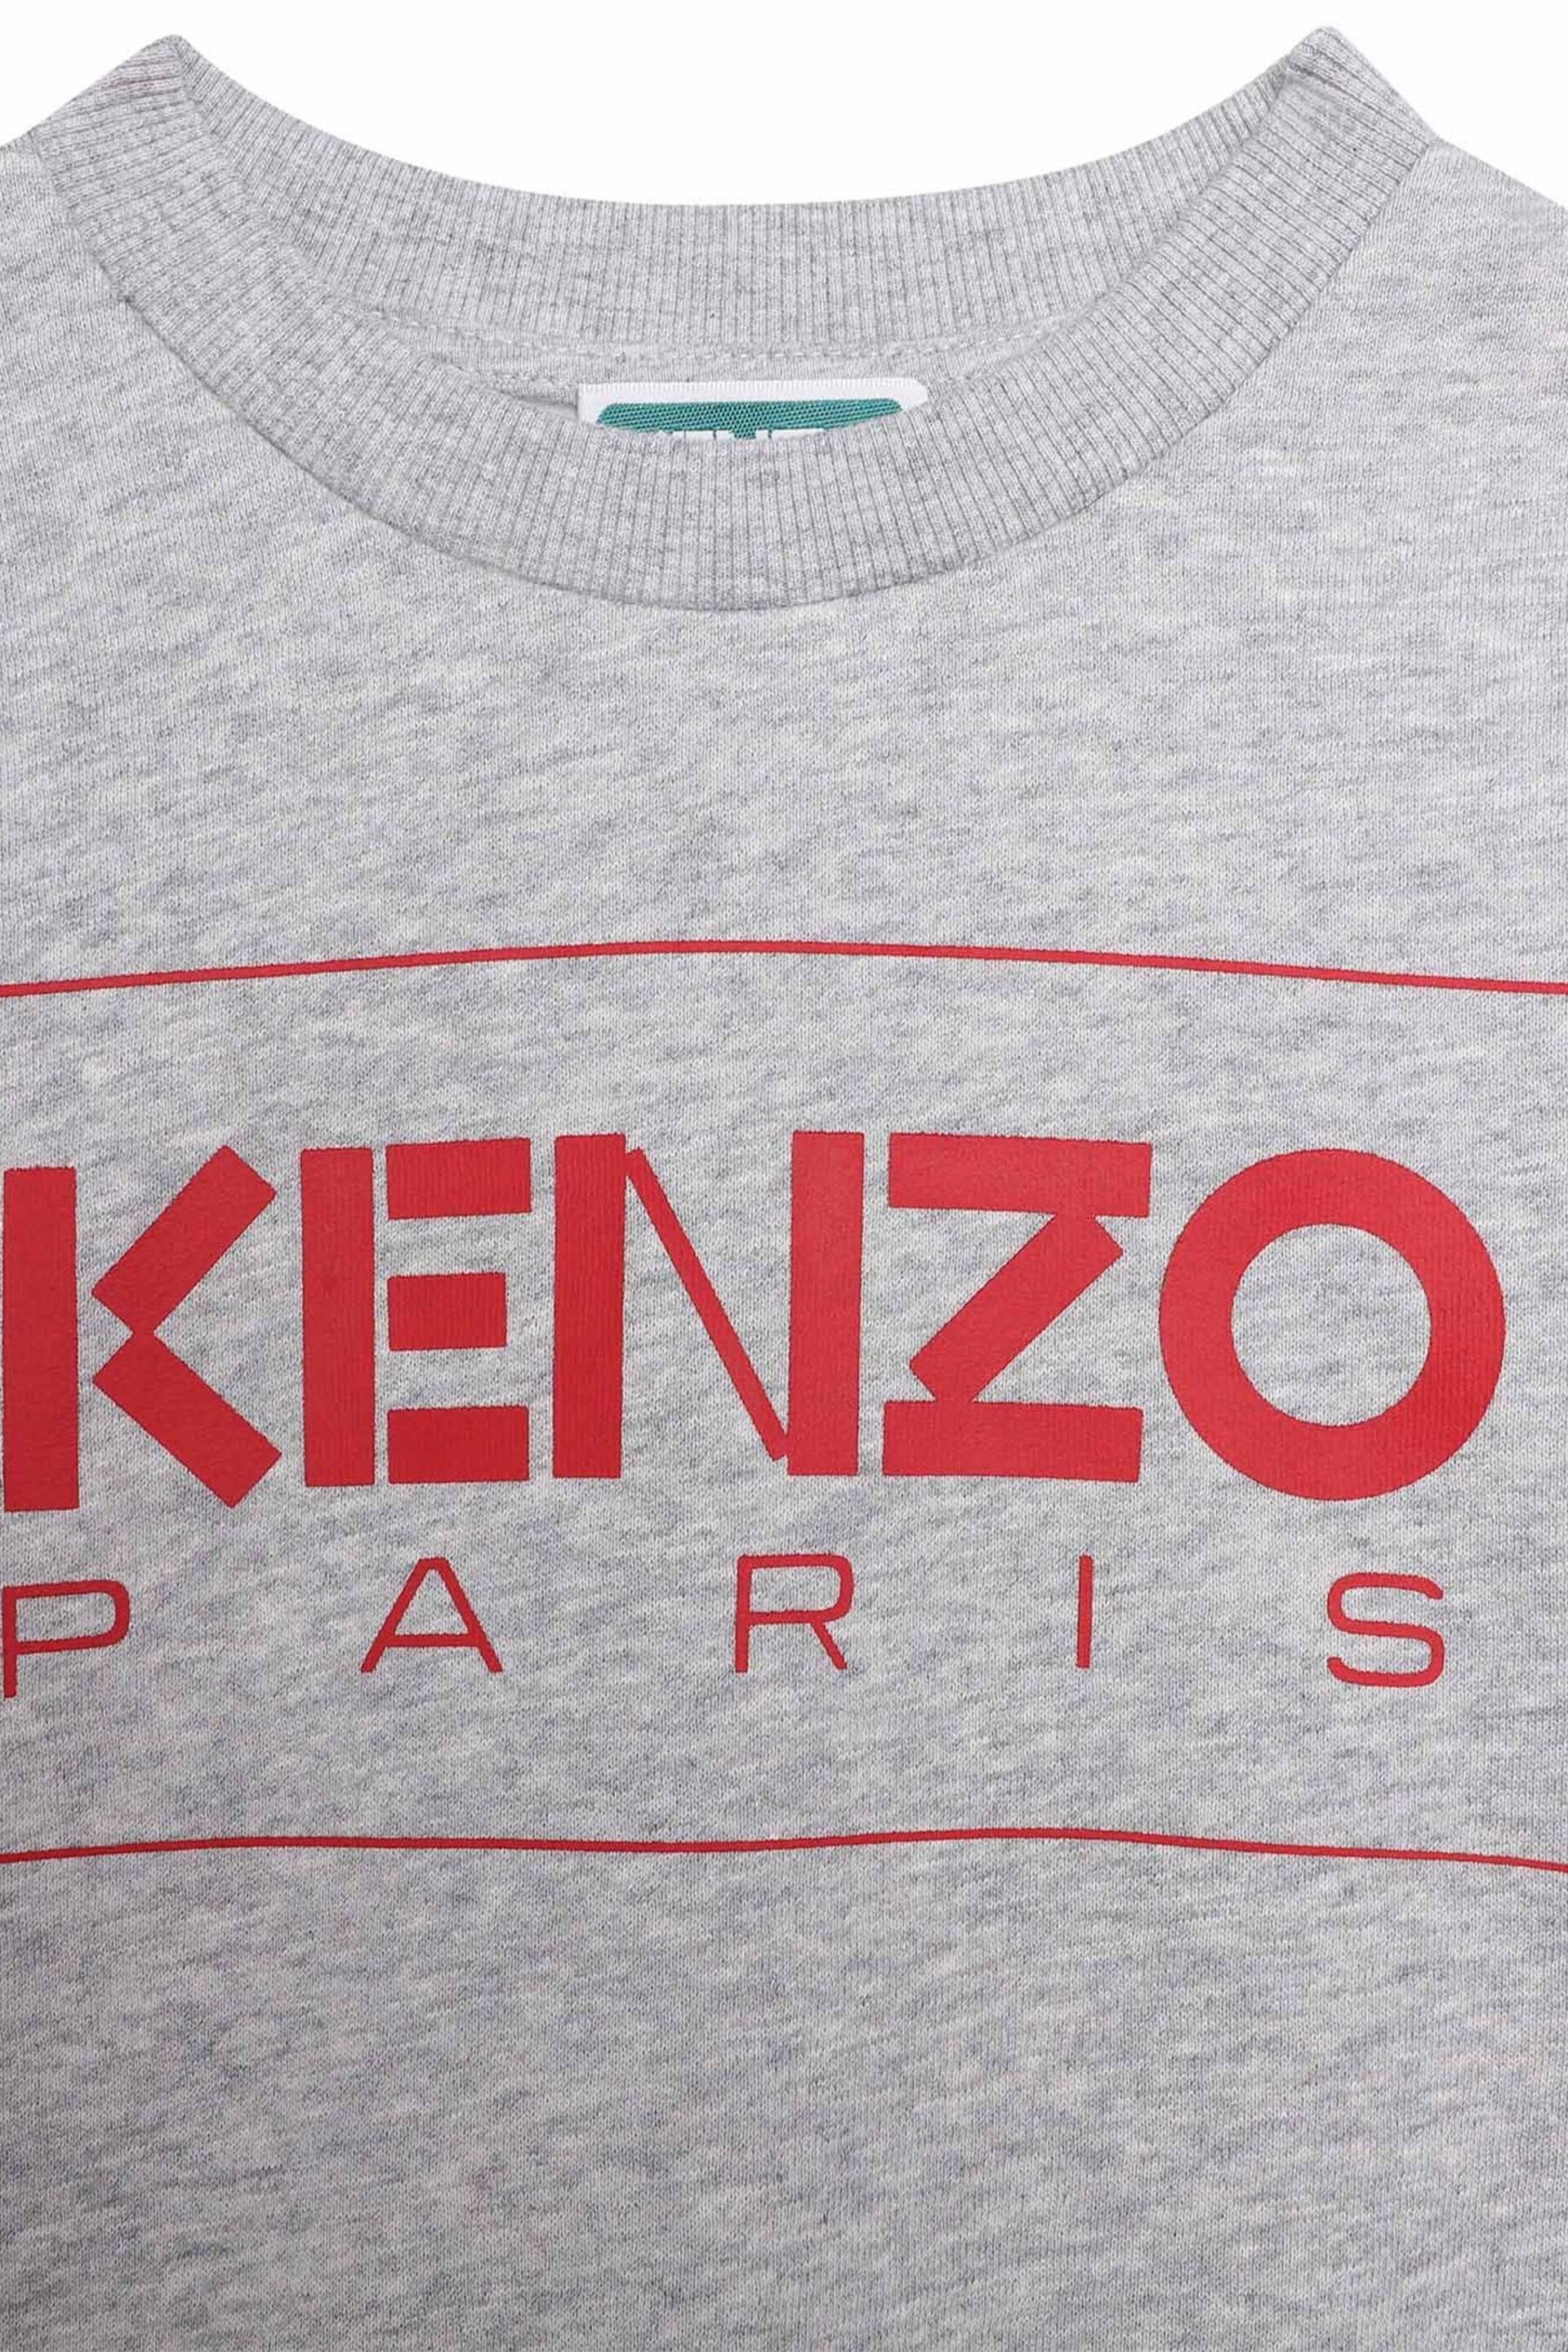 Kenzo Kids Grey Logo Sweatshirt - Image 3 of 3